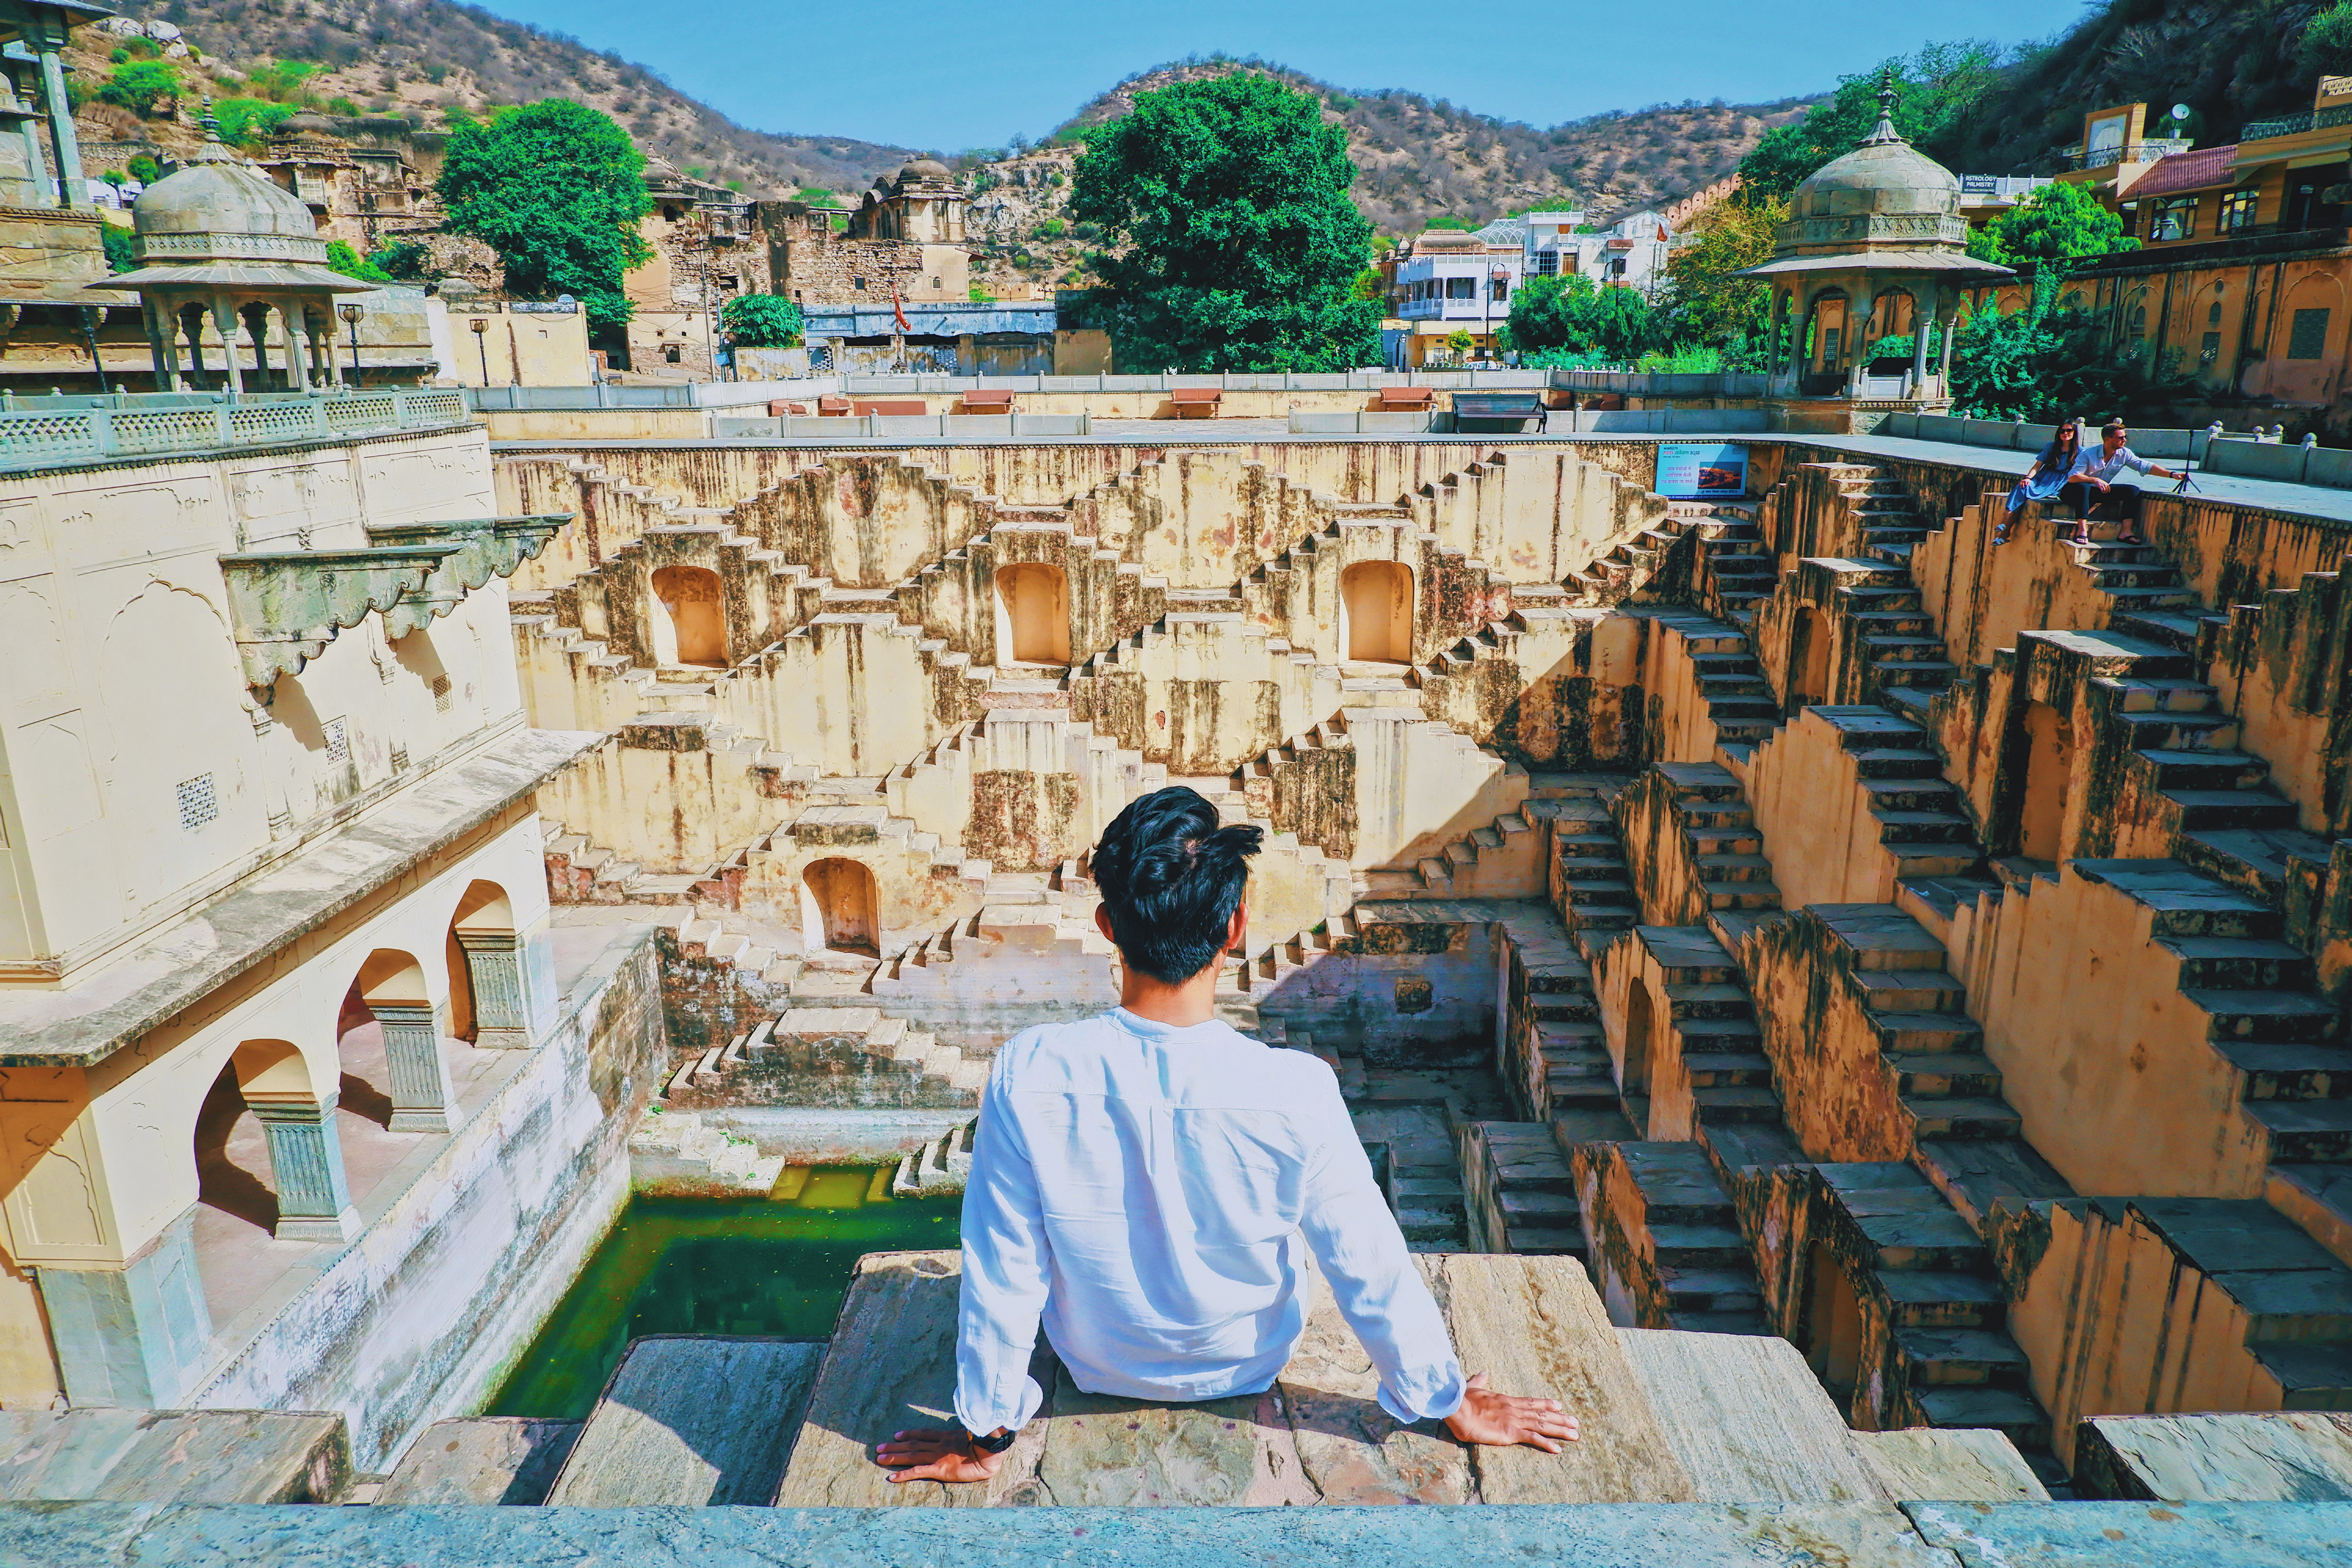 Panna meena ka kund - Giếng bậc thang của Jaipur là một trong nhiều kỳ quan kiến trúc ở Ấn Độ.